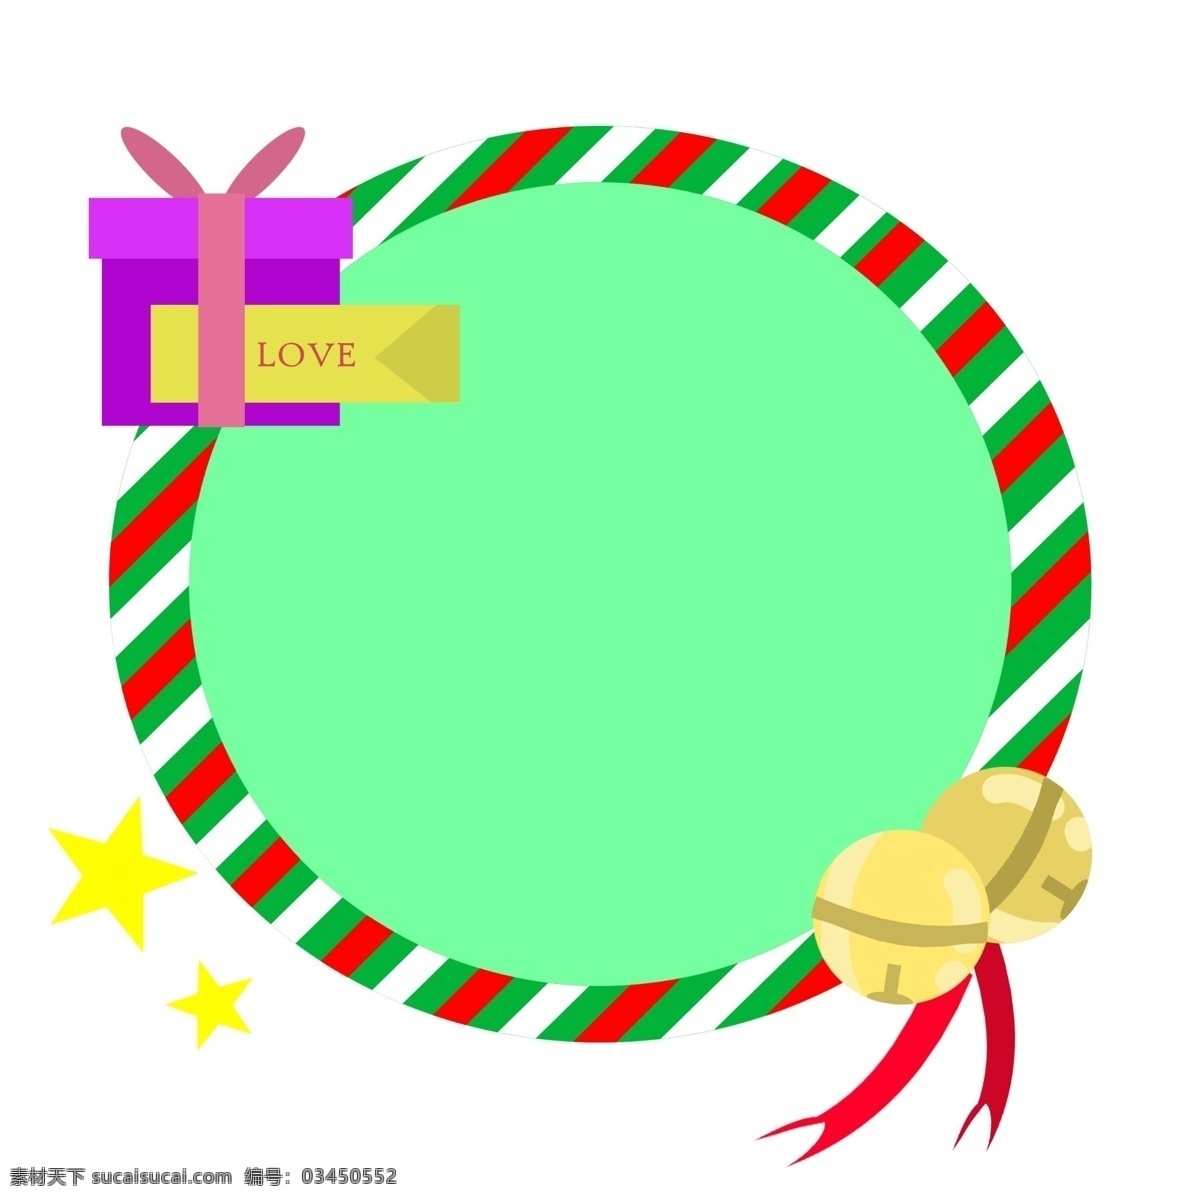 圣诞节 圆形 铃铛 边框 圣诞节边框 红色的蝴蝶结 圆形的铃铛 红色的丝带 金色的五角星 紫色的礼盒